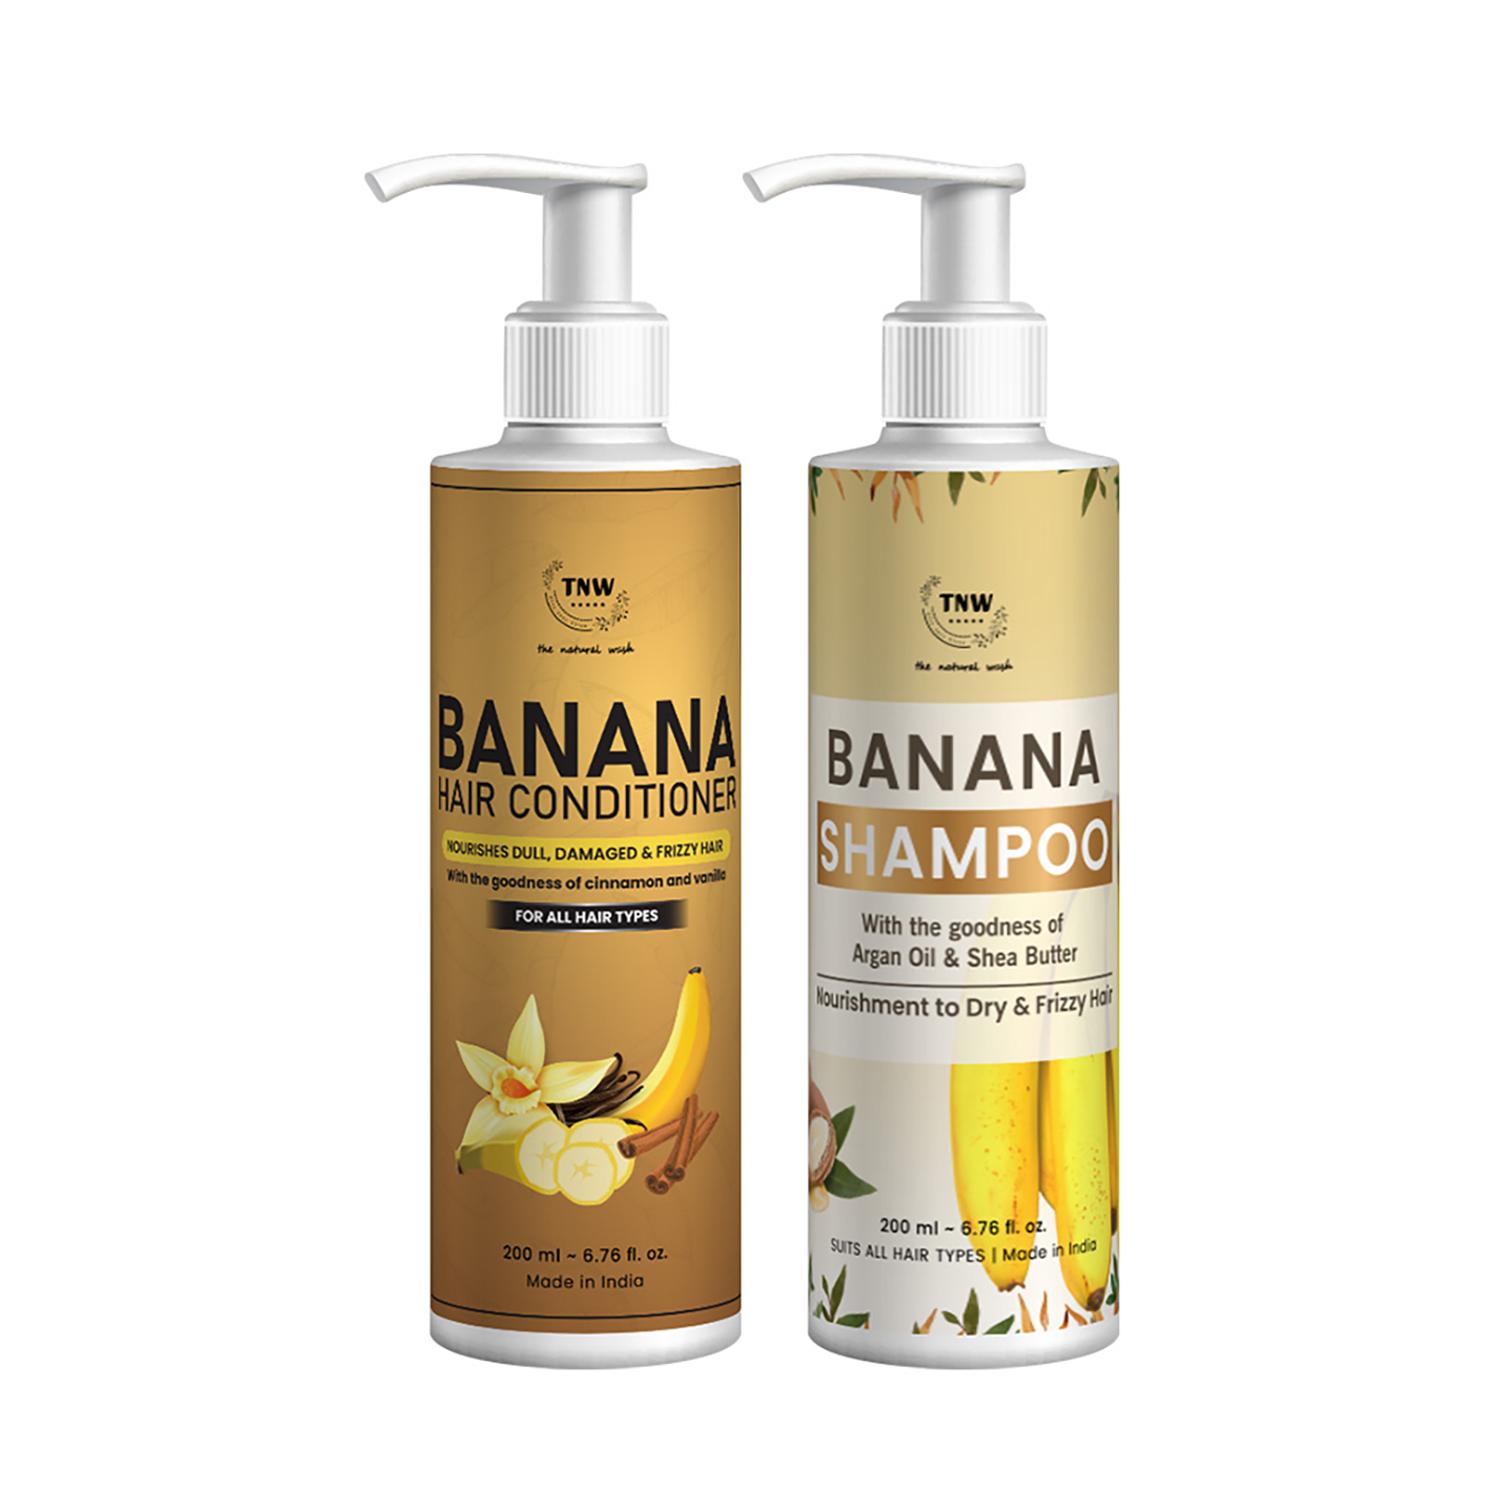 TNW The Natural Wash | TNW - The Natural Wash Banana Conditioner and Banana Shampoo Combo